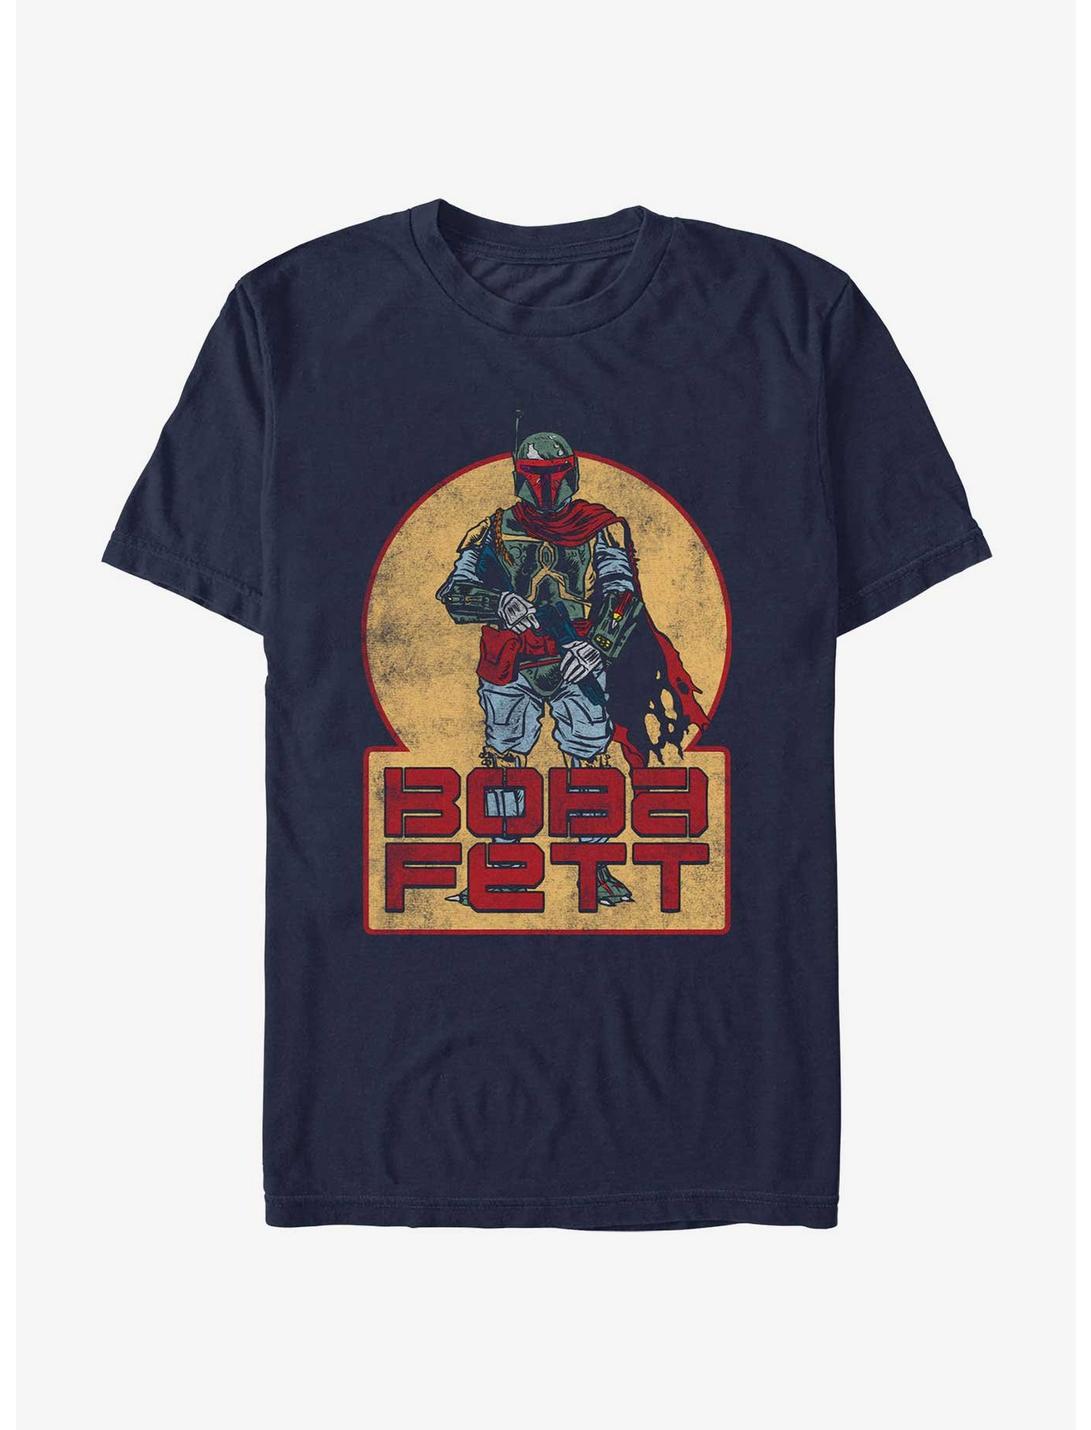 Star Wars Boba Fett Vintage T-Shirt, NAVY, hi-res